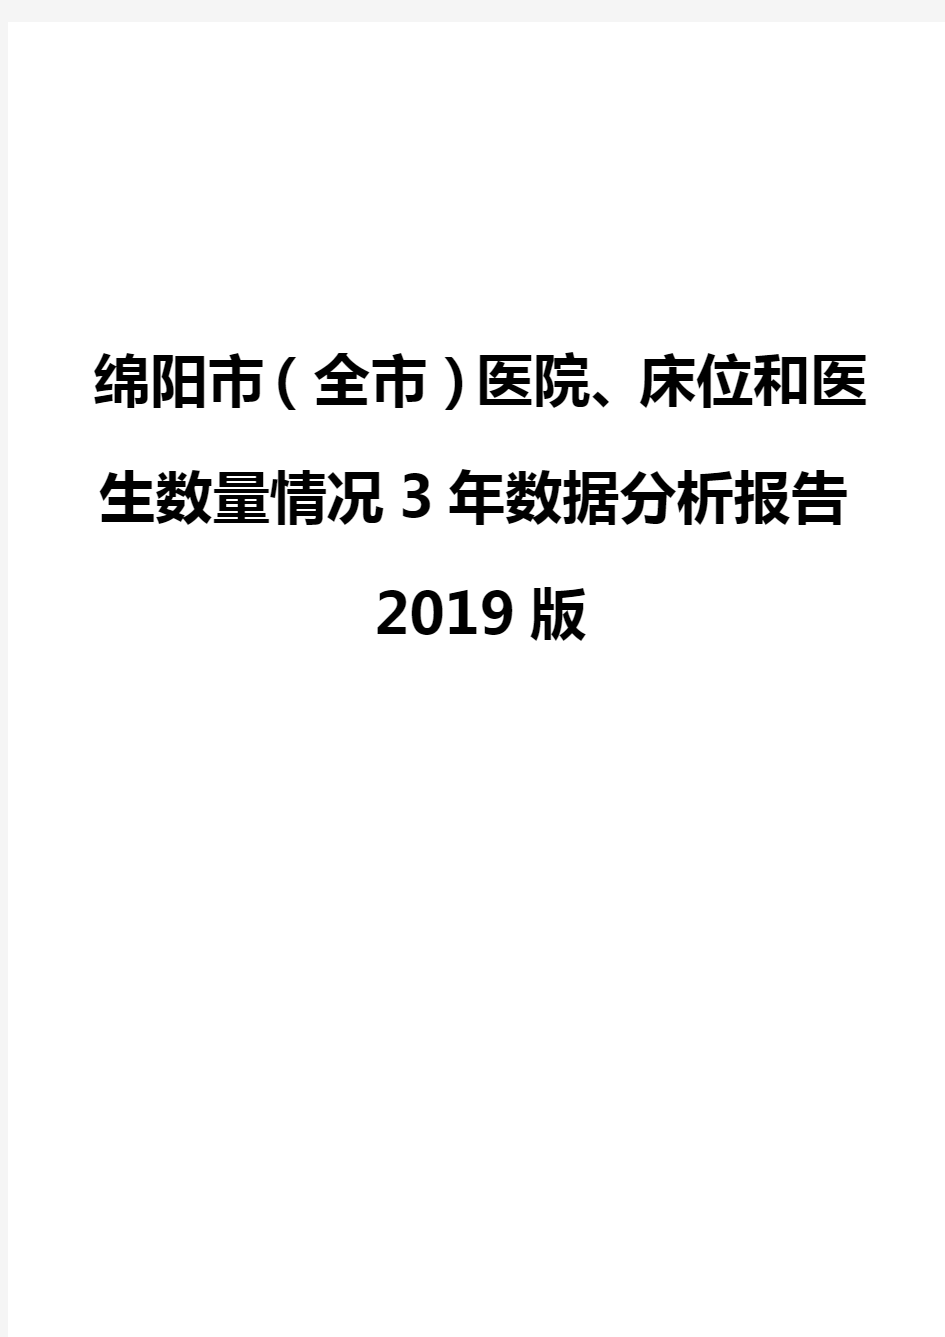 绵阳市(全市)医院、床位和医生数量情况3年数据分析报告2019版